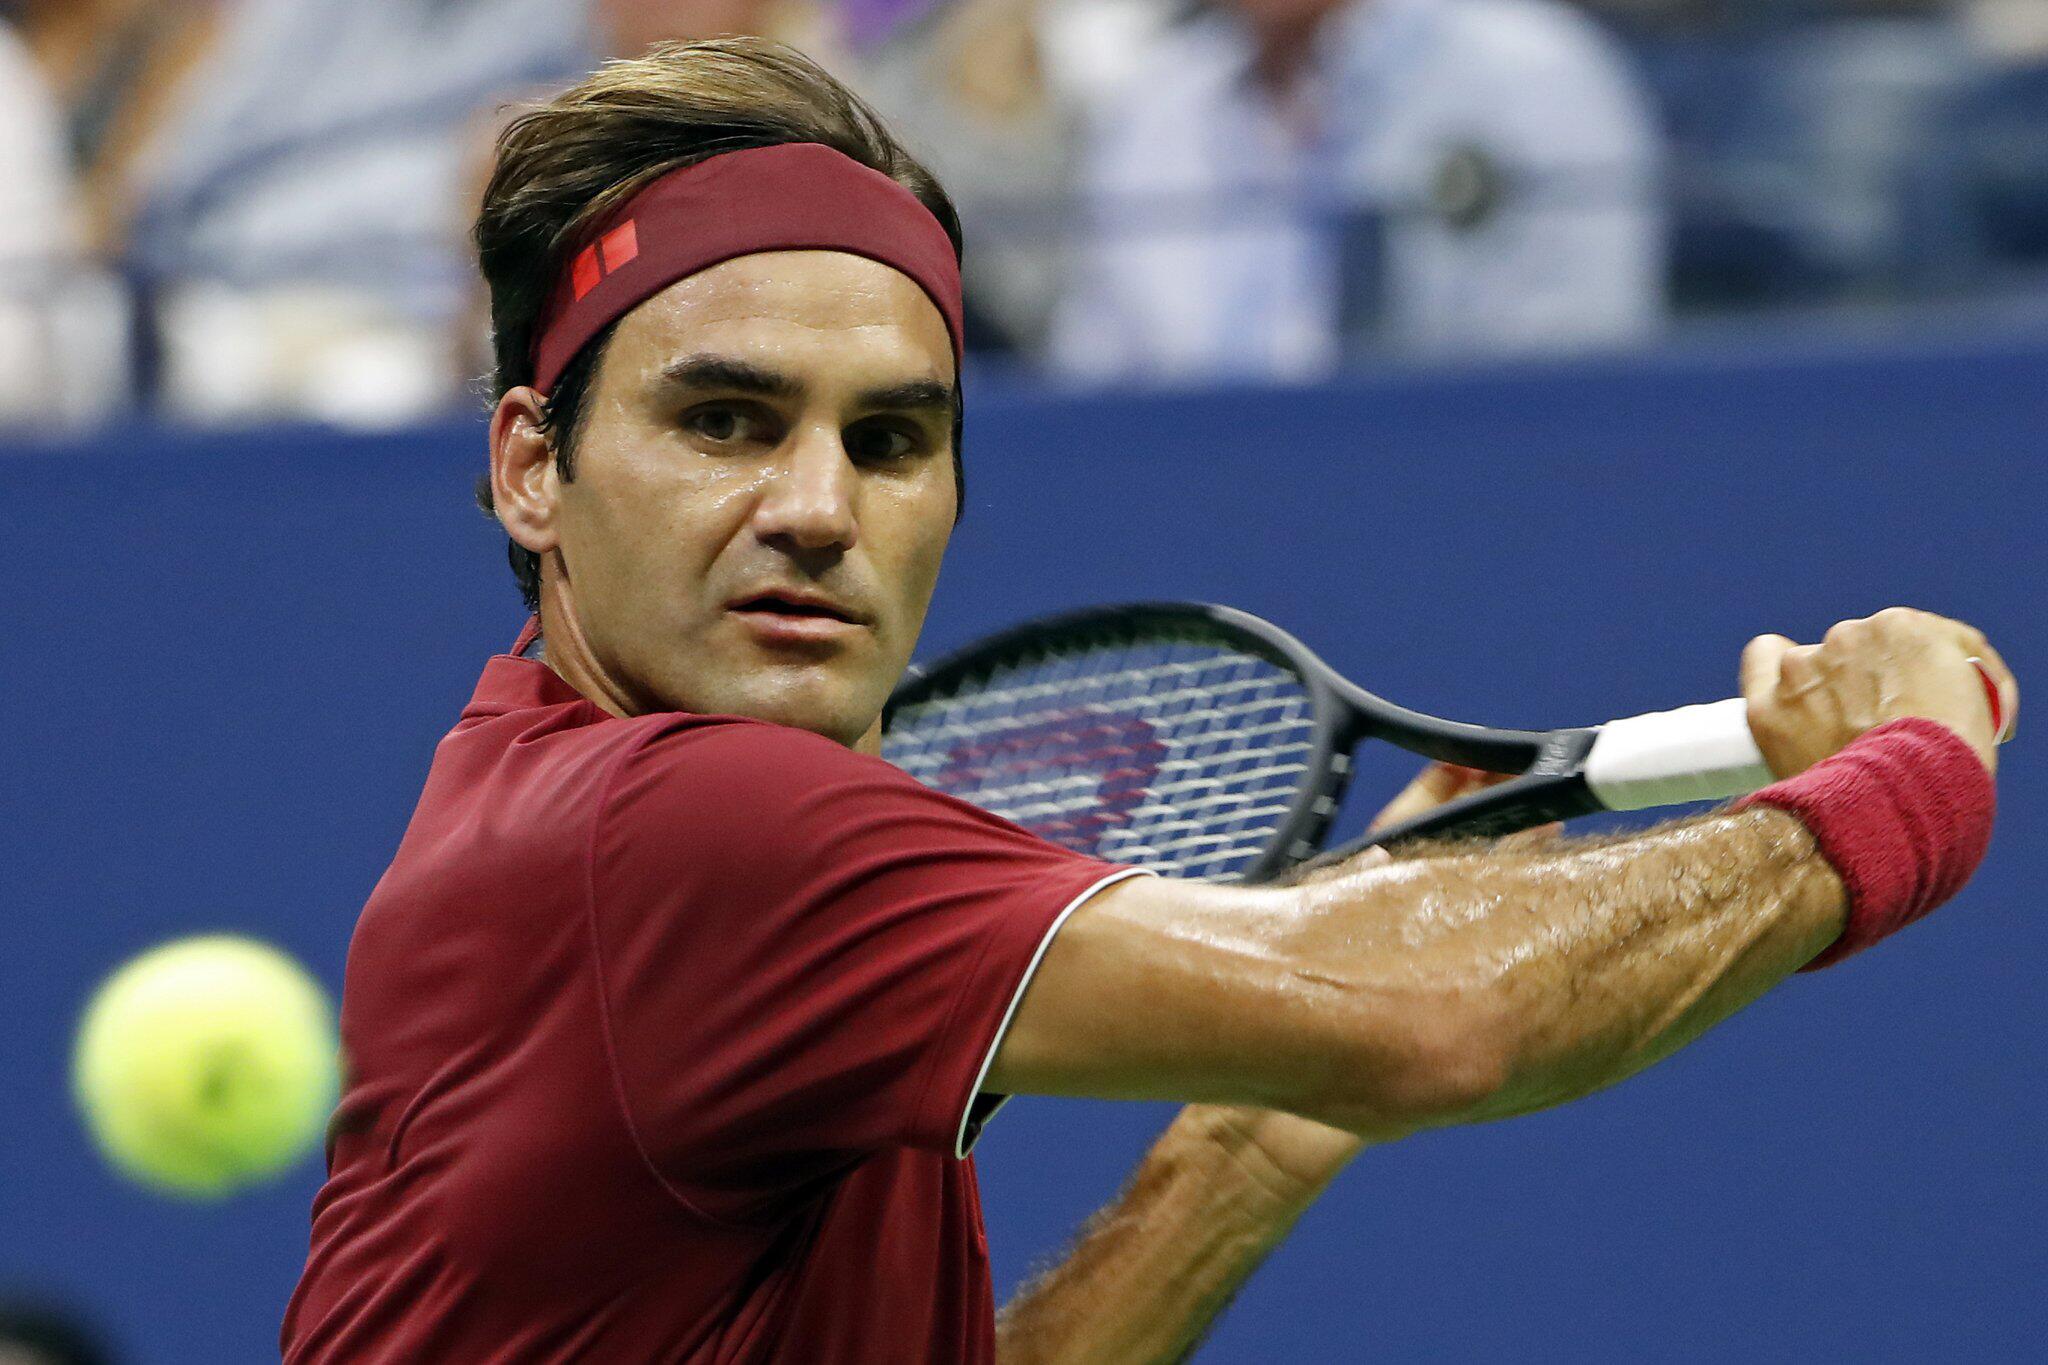 Roger Federer | Steckbrief, Bilder und News | GMX.CH2048 x 1365